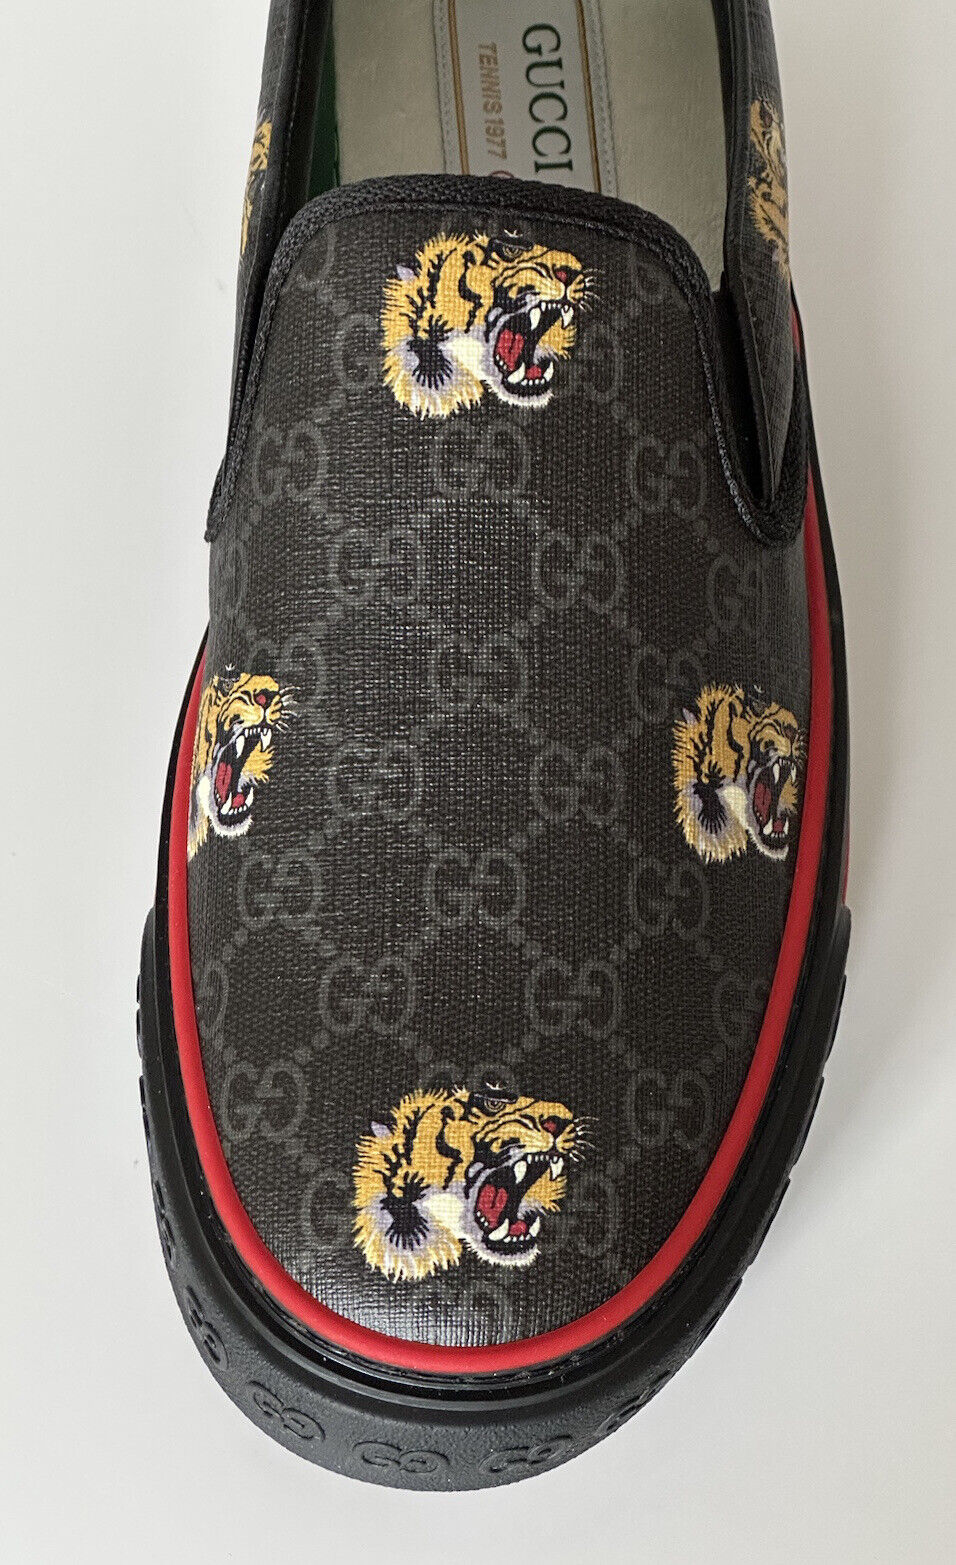 NIB Gucci Herren Low-Top Tiger Black Canvas Sneakers 10,5 US (Gucci 10) 699971 IT 